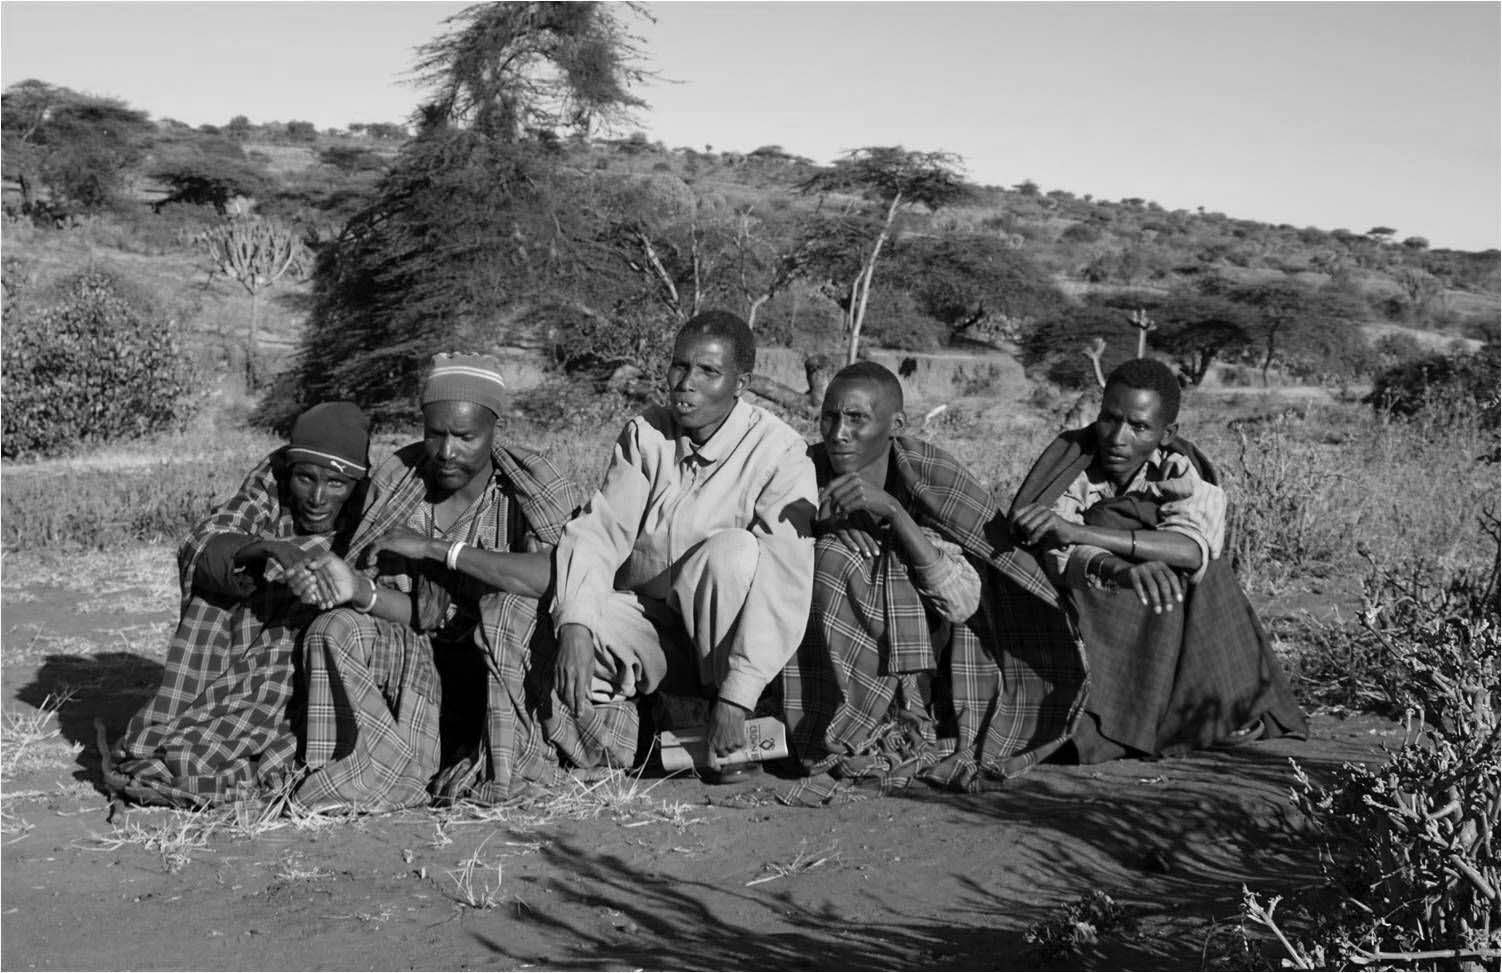 Iraqw tribe in Tanzania-Mado Tours Africa